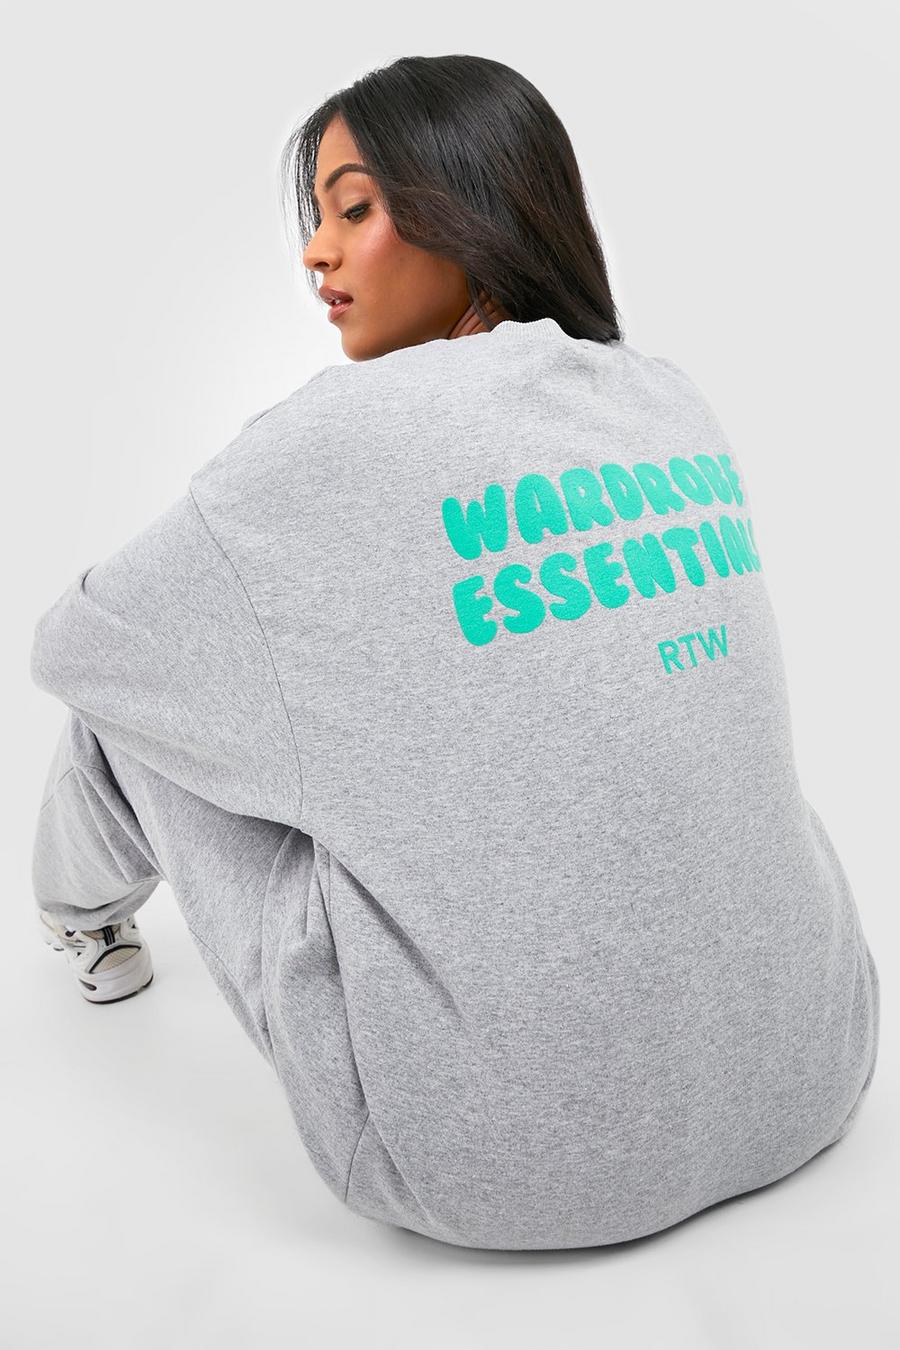 Tall Oversize Sweatshirt mit Wardrobe Essentials Slogan, Grey image number 1